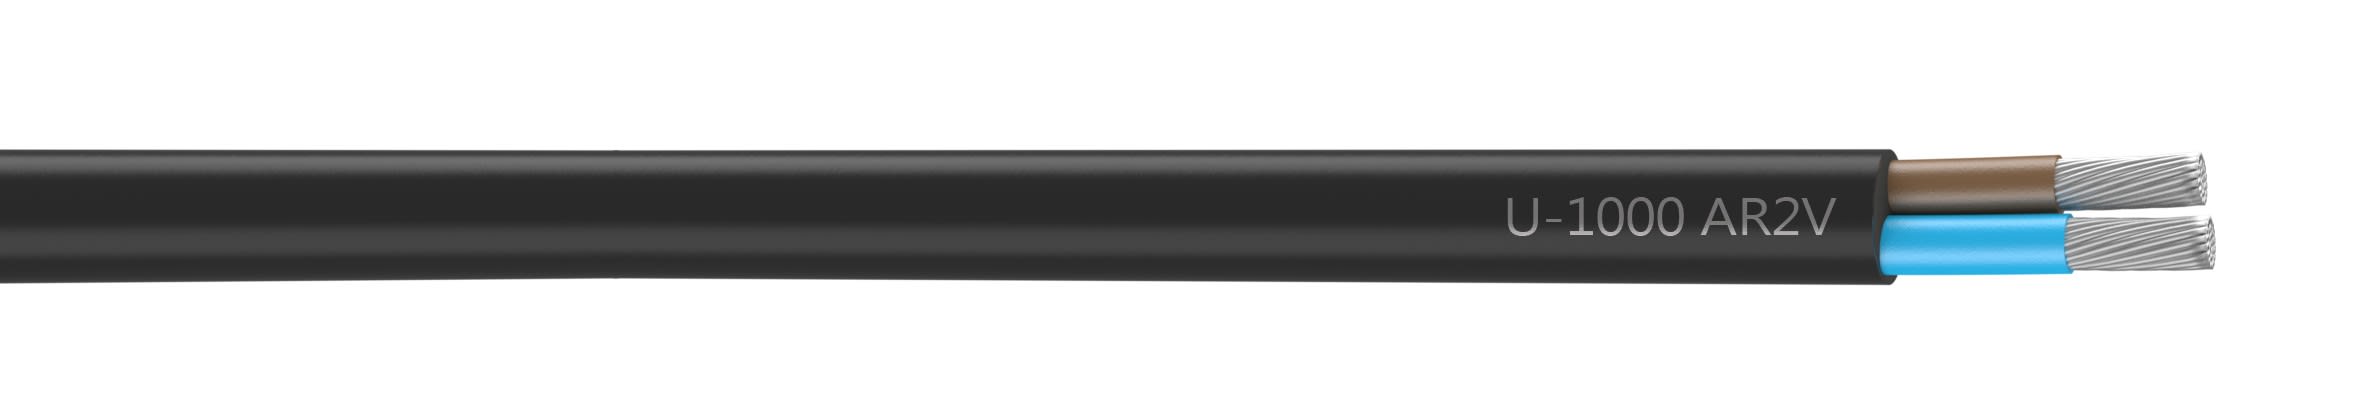 Nexans - Câble rigide U-1000 AR2V aluminium 2x25 longueur à la coupe